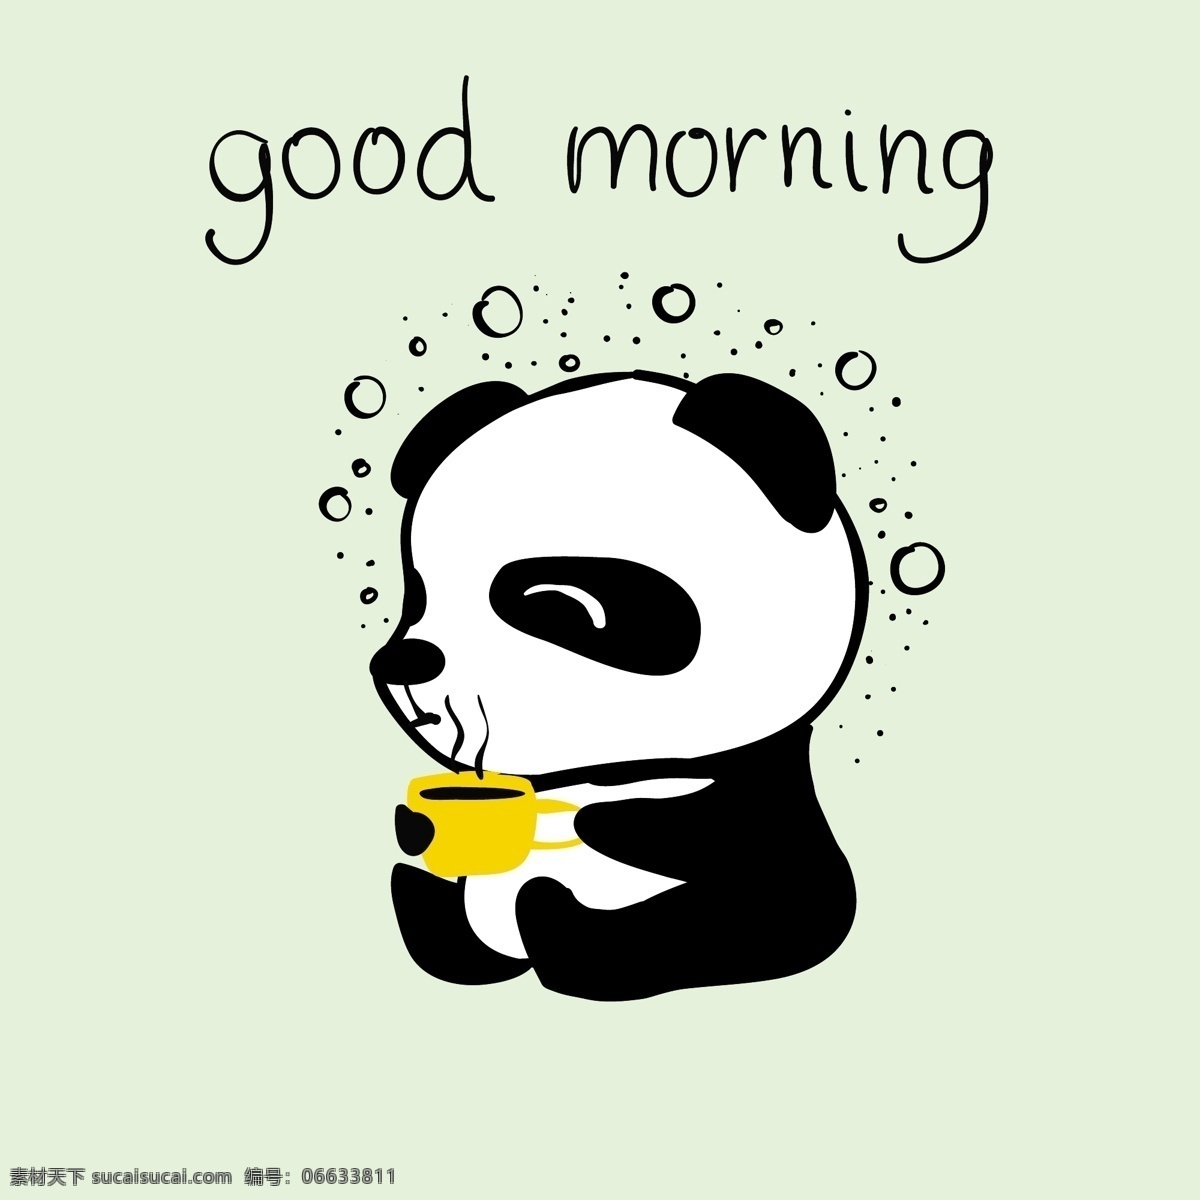 早安 小熊猫 卡通 动物 黑白 可爱 平面素材 设计素材 生活 矢量素材 温暖 熊猫 艺术